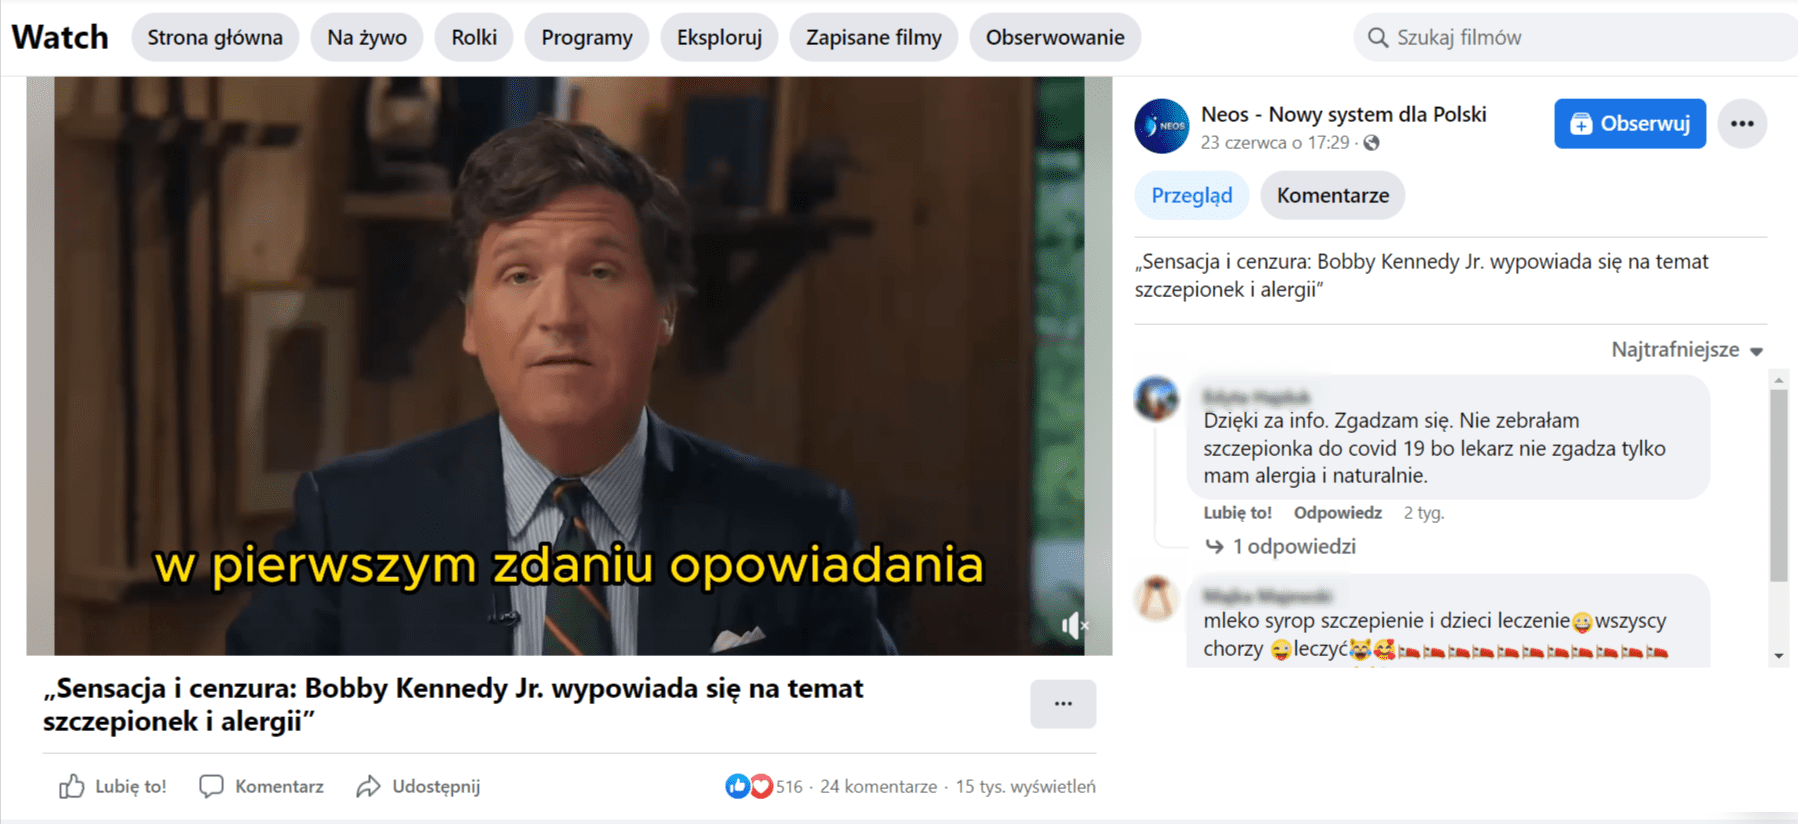 Zrzut ekranu z nagrania na profilu Neos – Nowy system dla Polski. Liczba reakcji: 516, liczba komentarzy: 24, liczba wyświetleń: 15 tys.